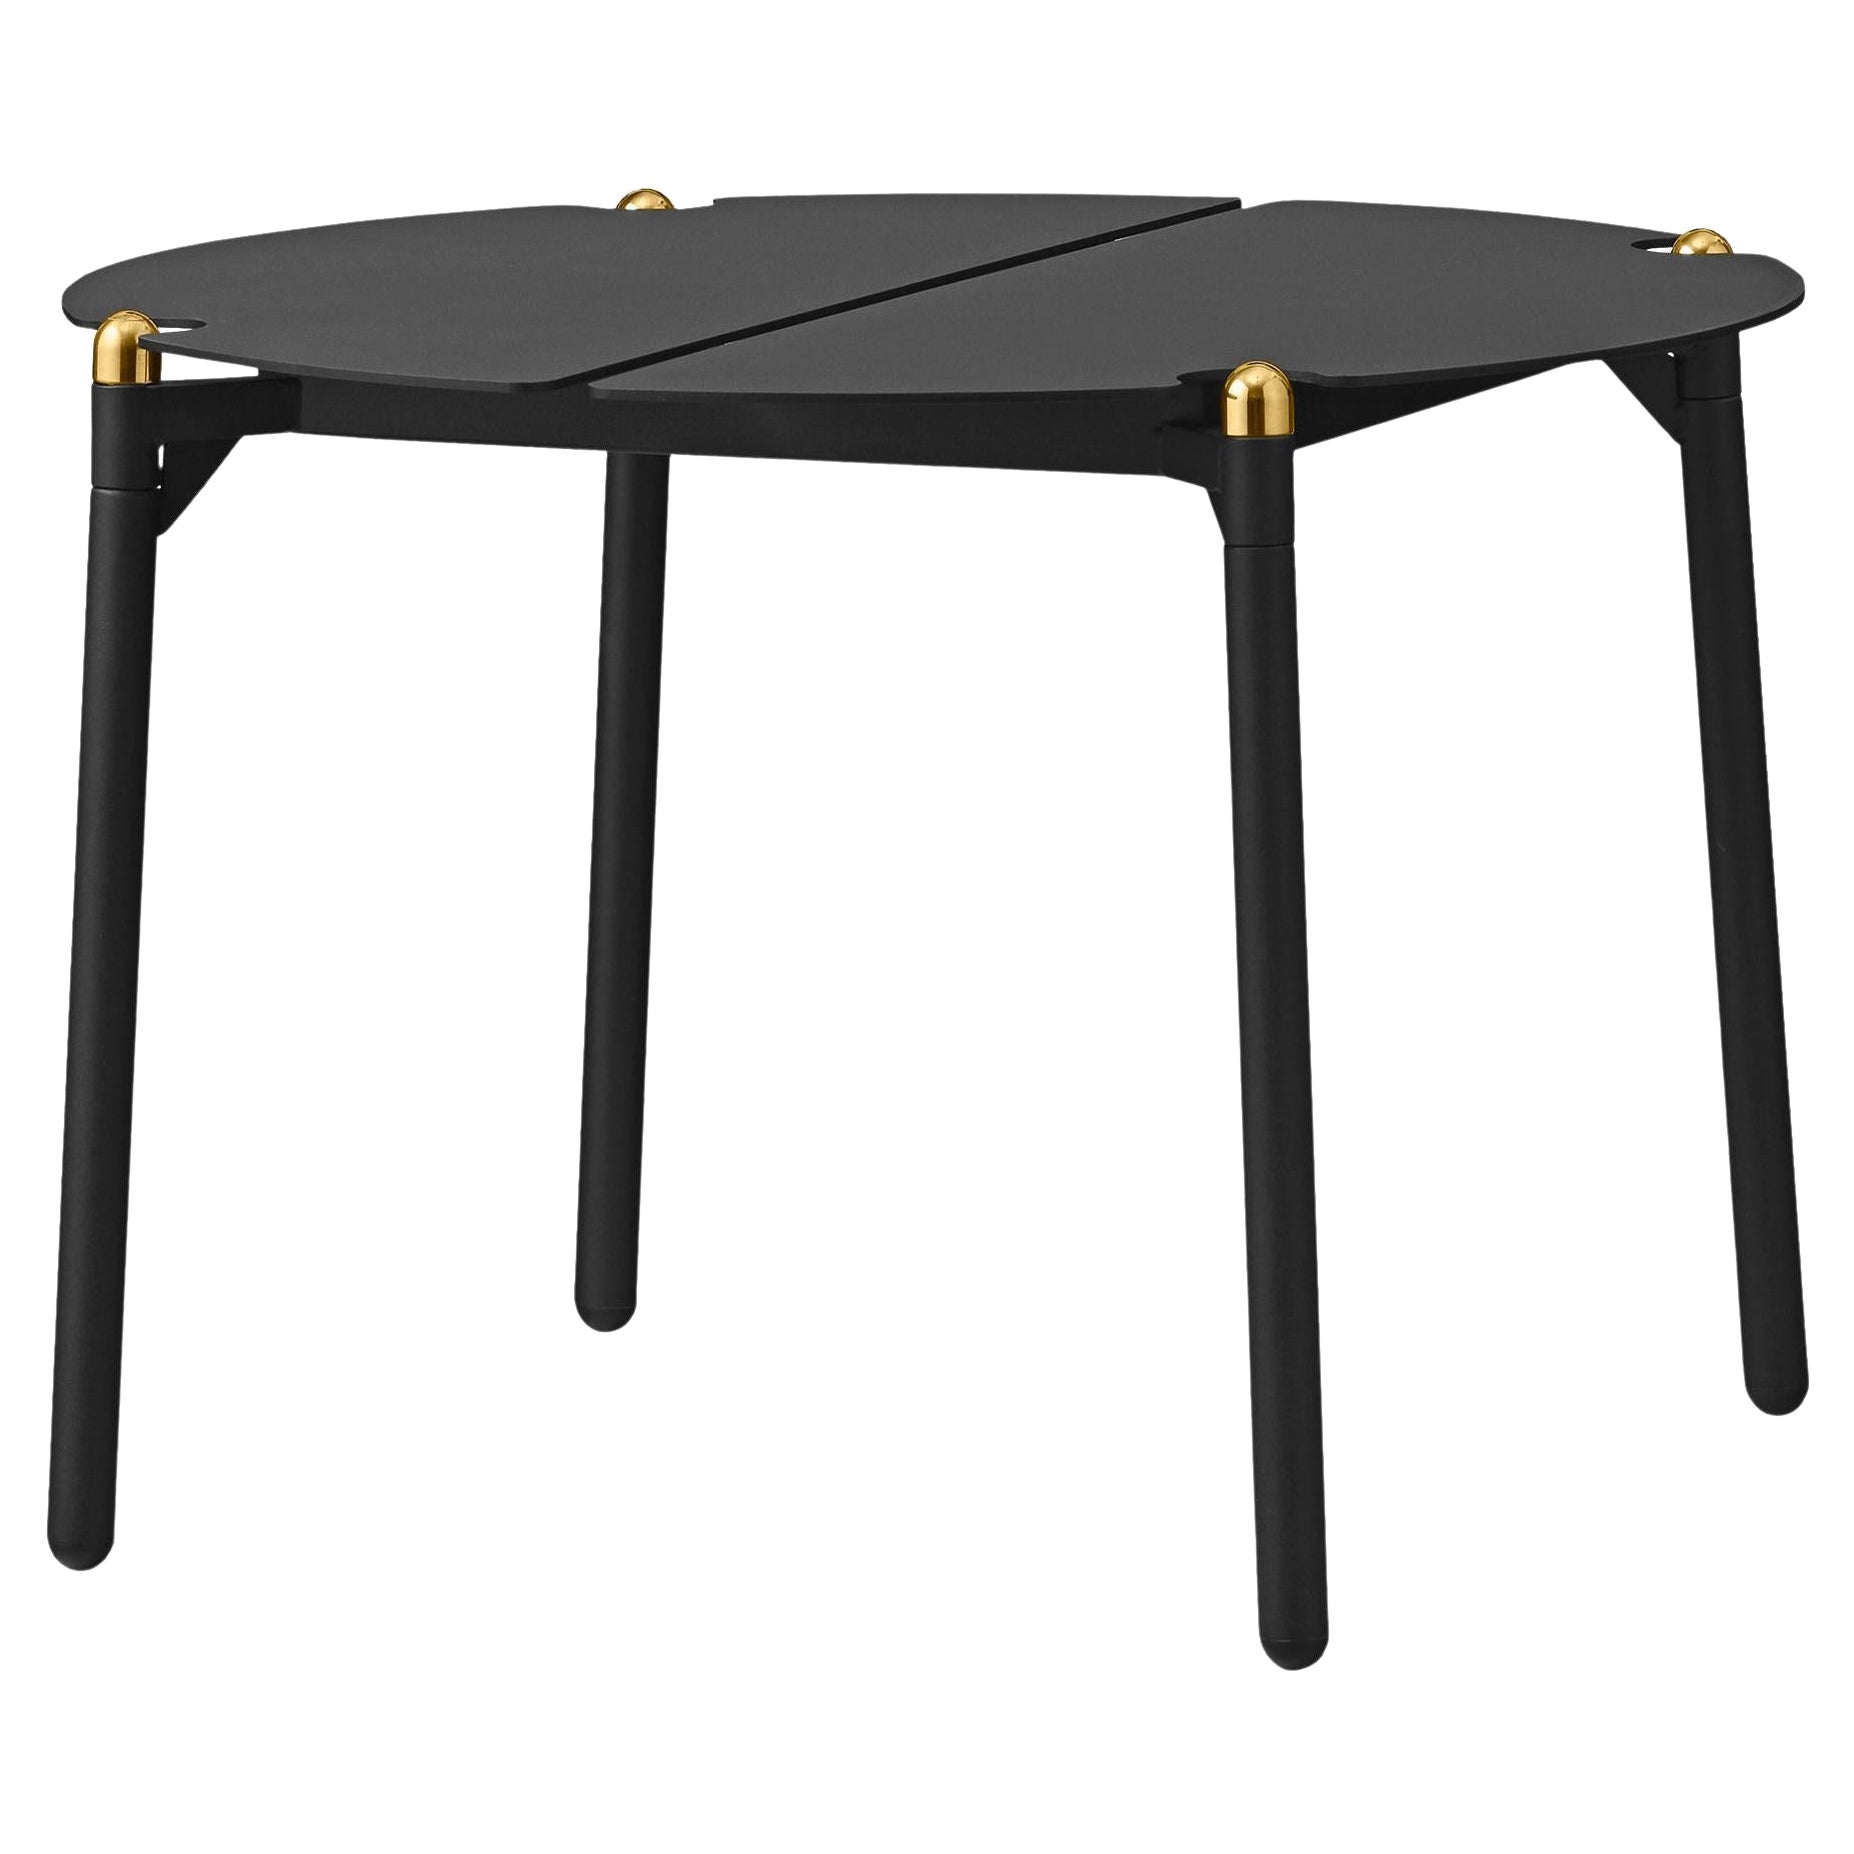 Petite table de salon minimaliste noire et dorée